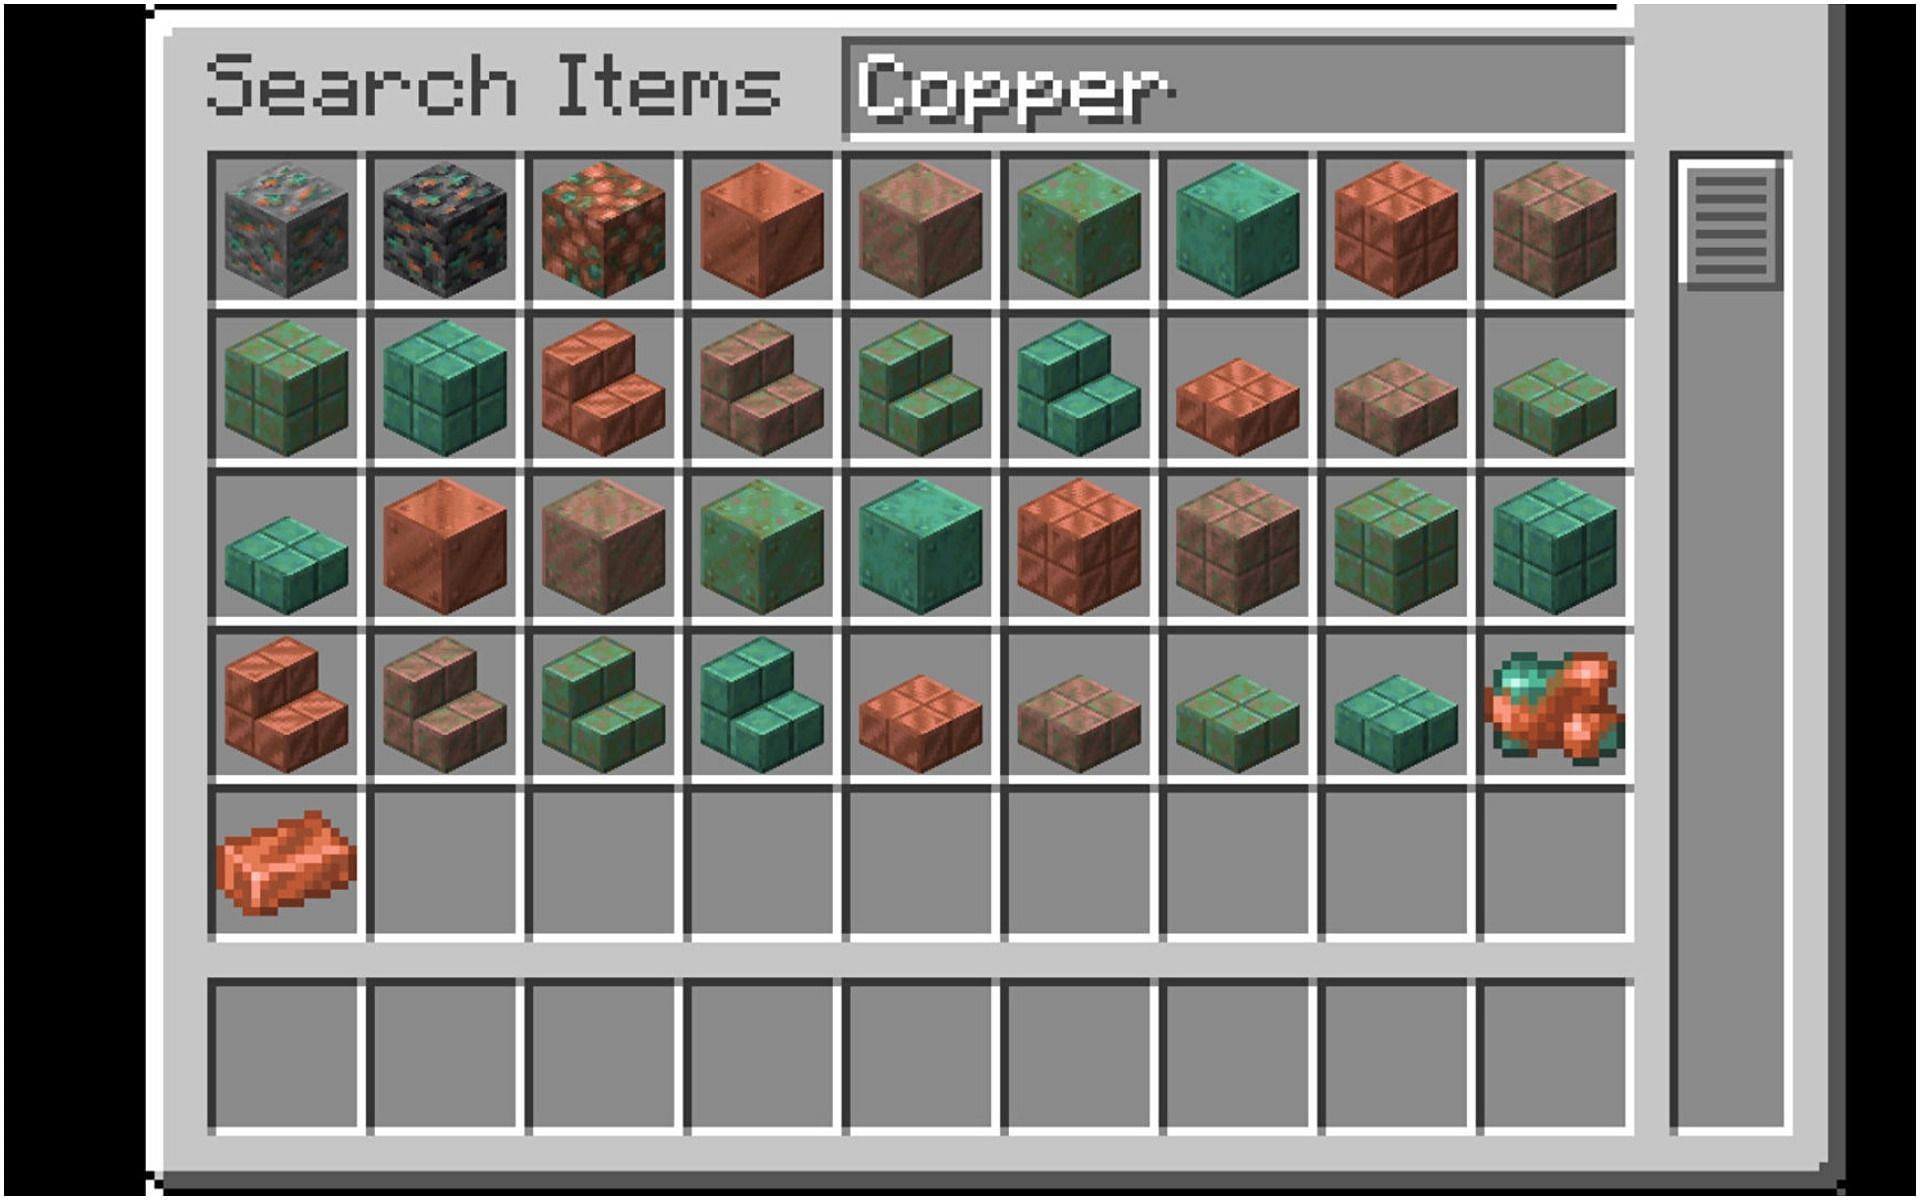 Best Ways To Find Copper In Minecraft